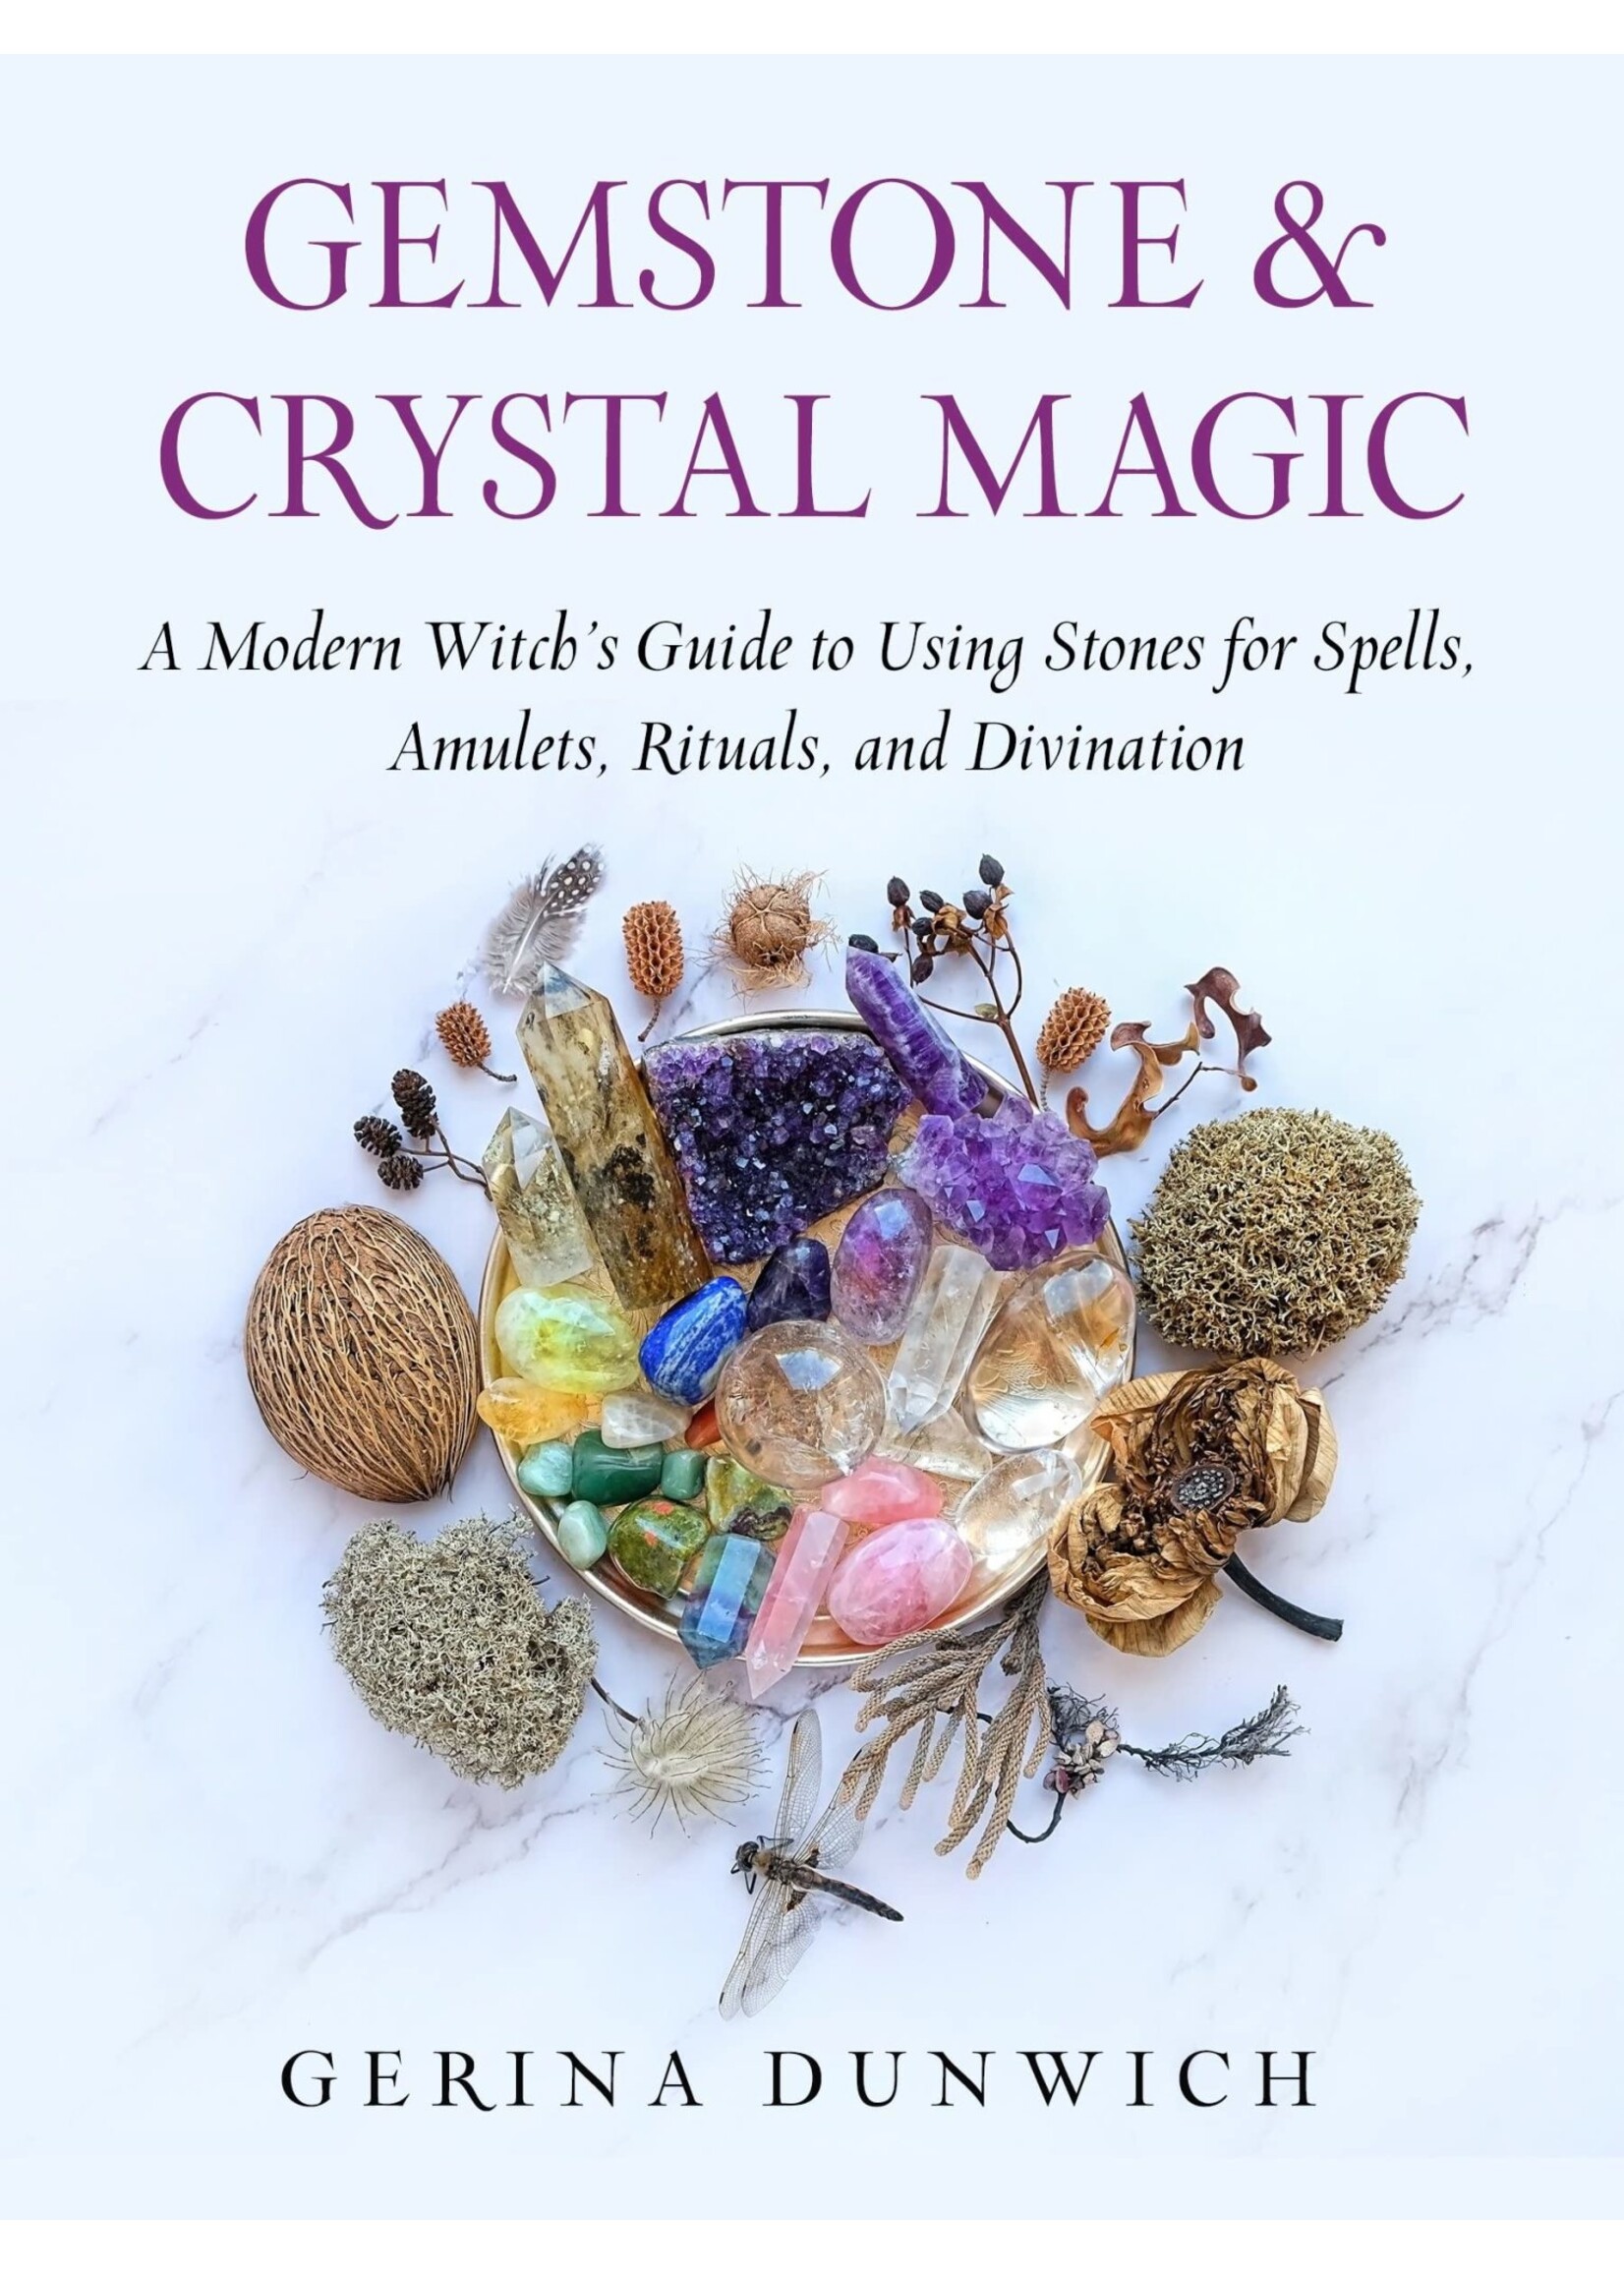 Gemstone & Crystal Magic by Gerina Dunwich